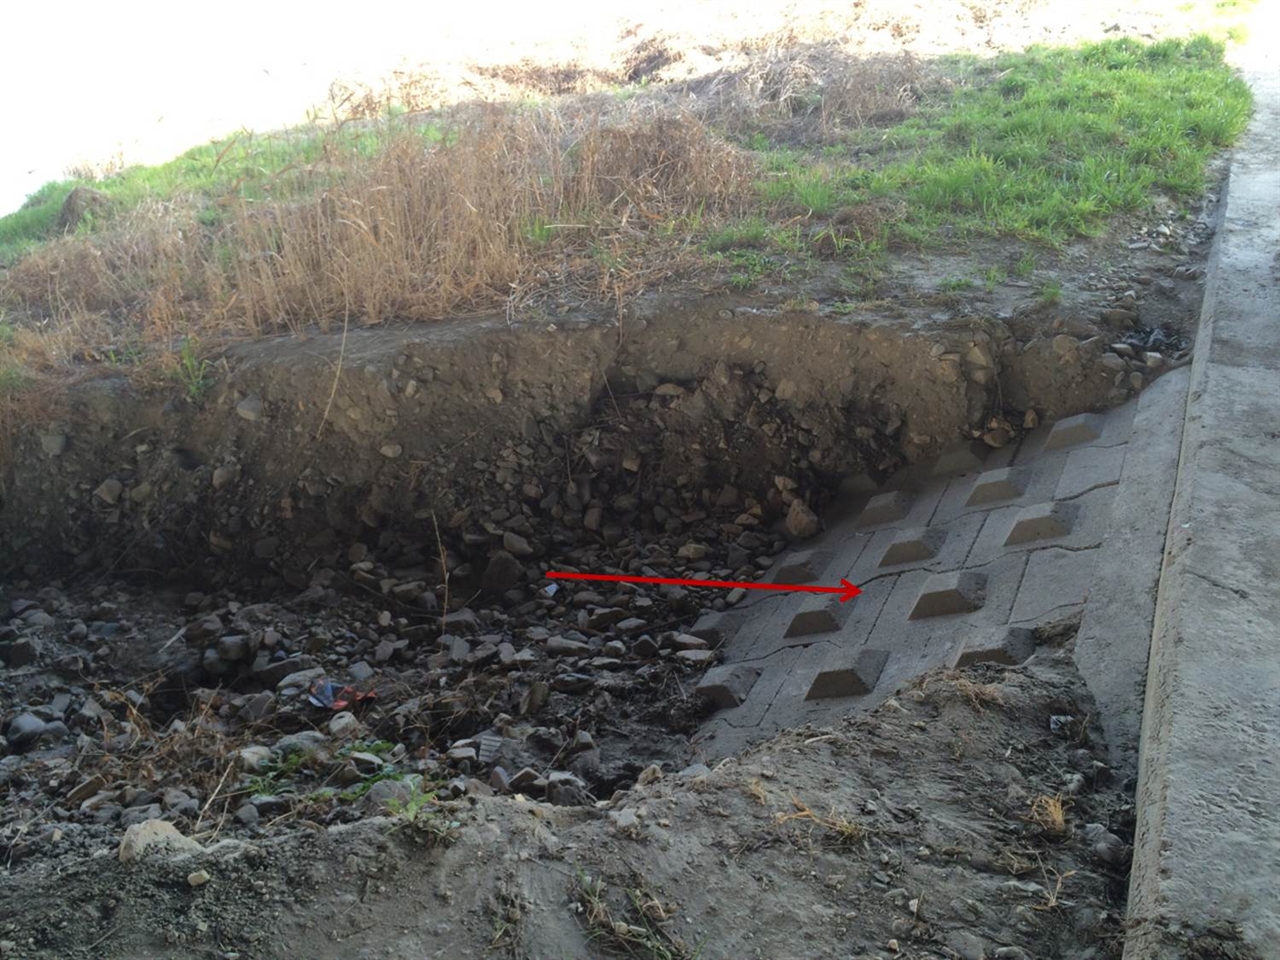 흙으로 덮었던 은제가 노출되어 호안콘크리트 블럭이 보인다. 은제 위에는 풀들이 자라고 있는 것을 볼 수 있다. 